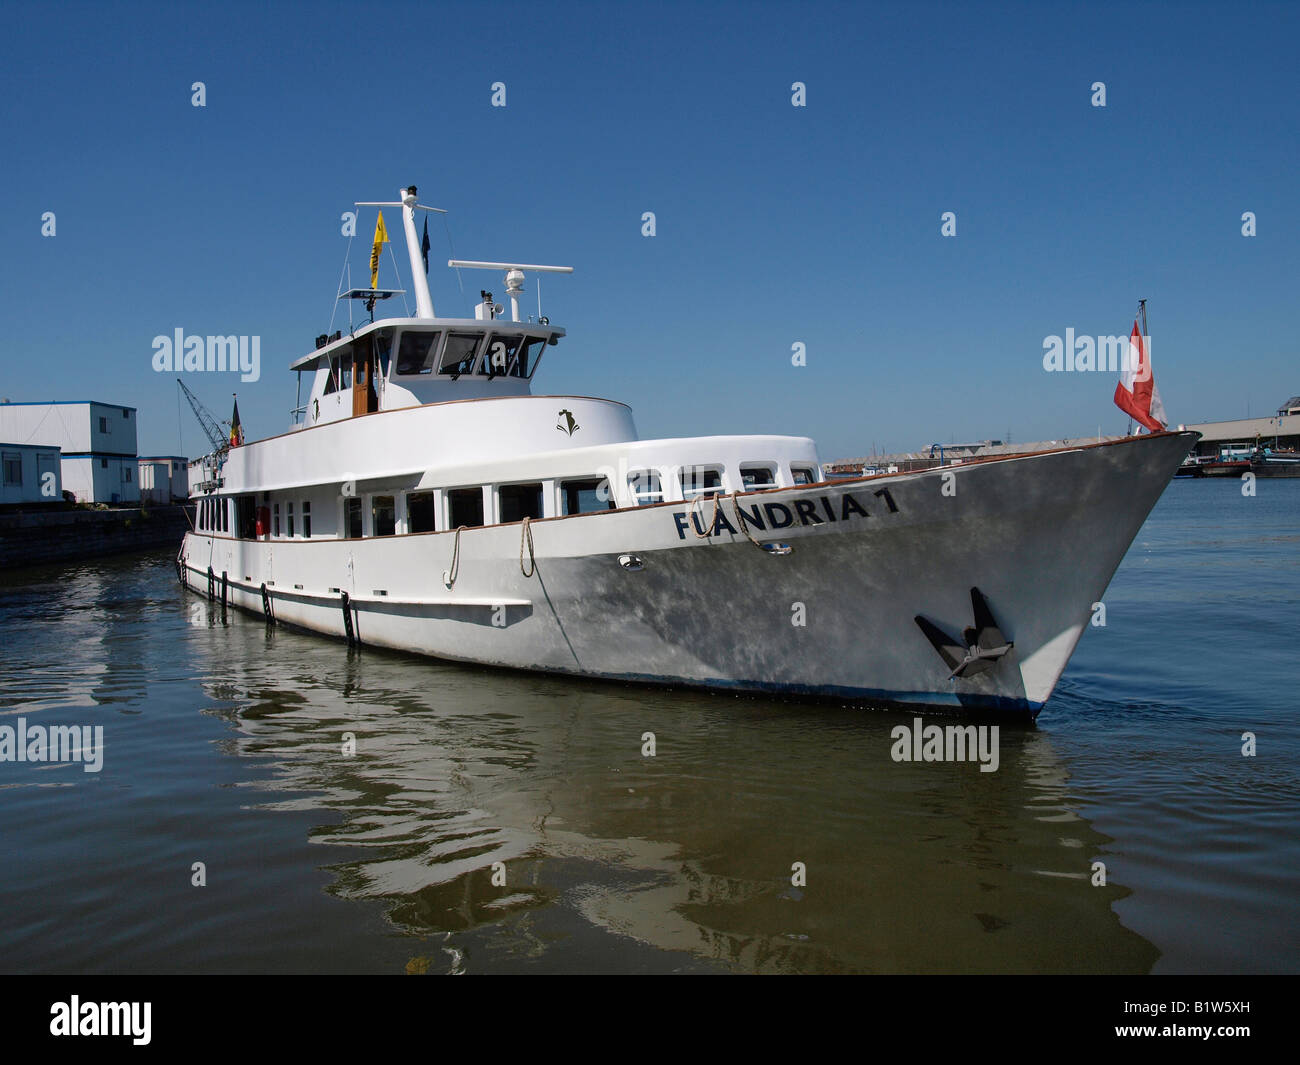 Flandria 1 crucero Yate usado para excursiones turísticas en el puerto de Amberes, Flandes, Bélgica Foto de stock